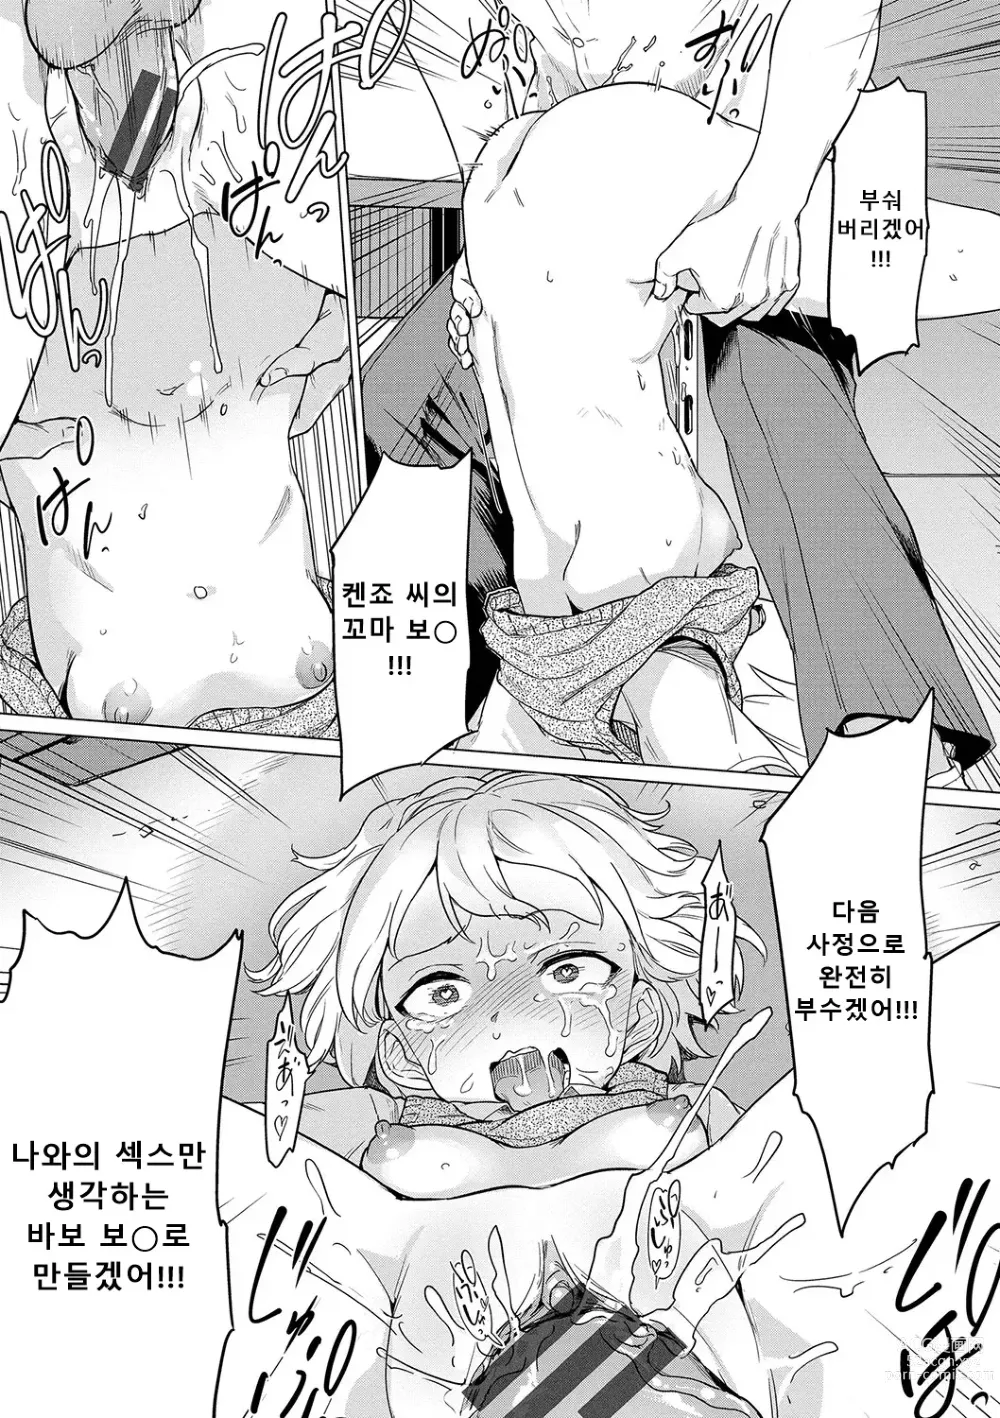 Page 191 of manga 절정개발국♥